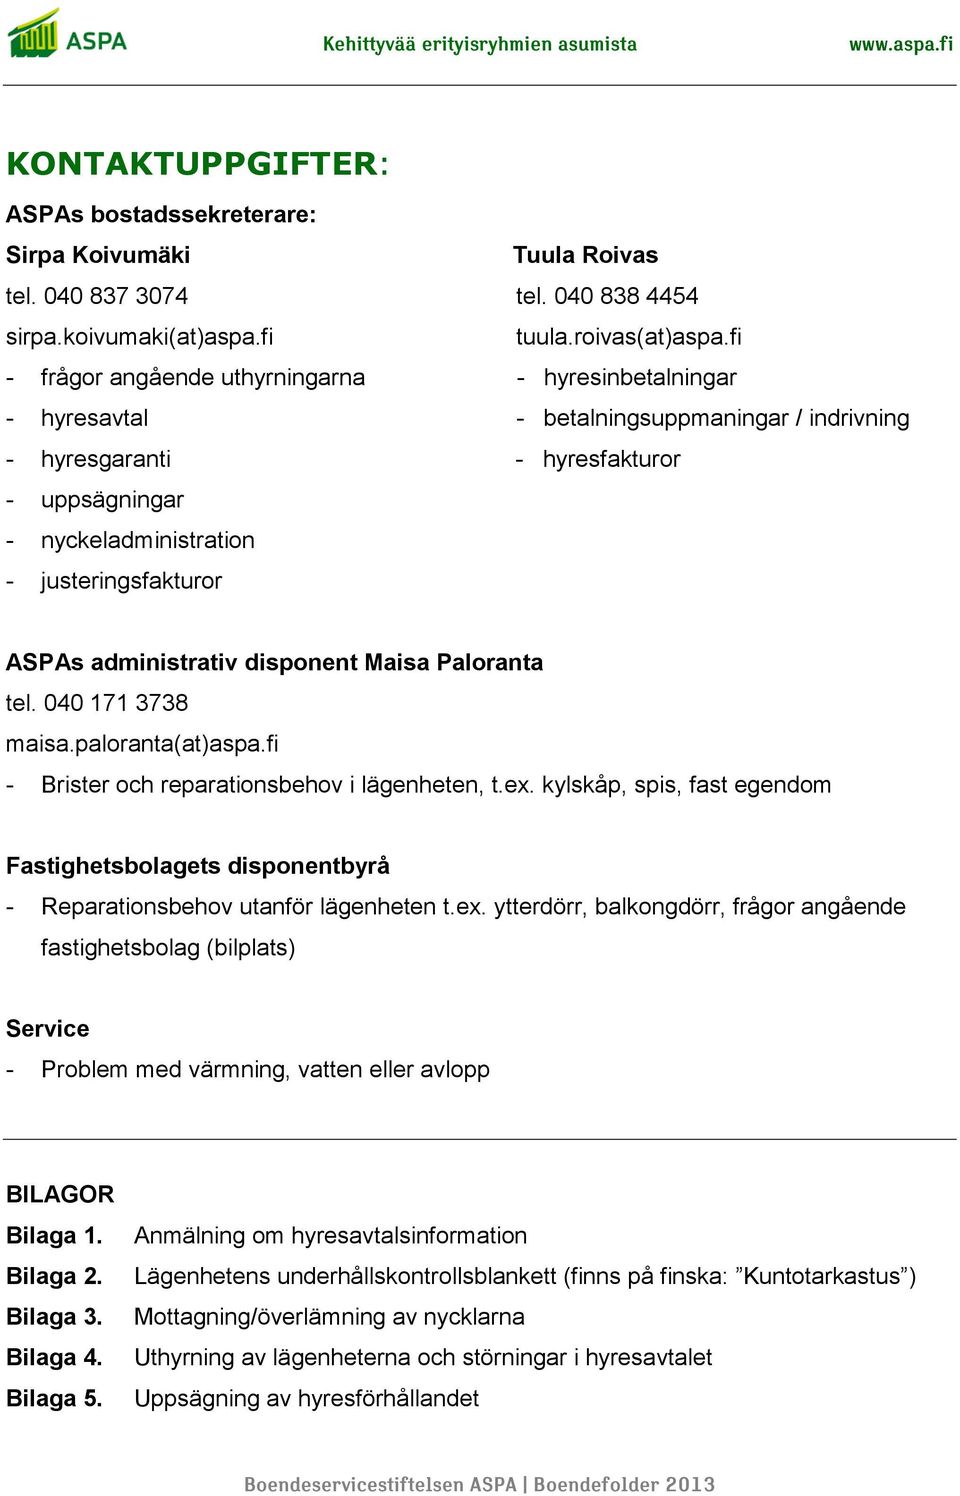 ASPAs administrativ disponent Maisa Paloranta tel. 040 171 3738 maisa.paloranta(at)aspa.fi - Brister och reparationsbehov i lägenheten, t.ex.